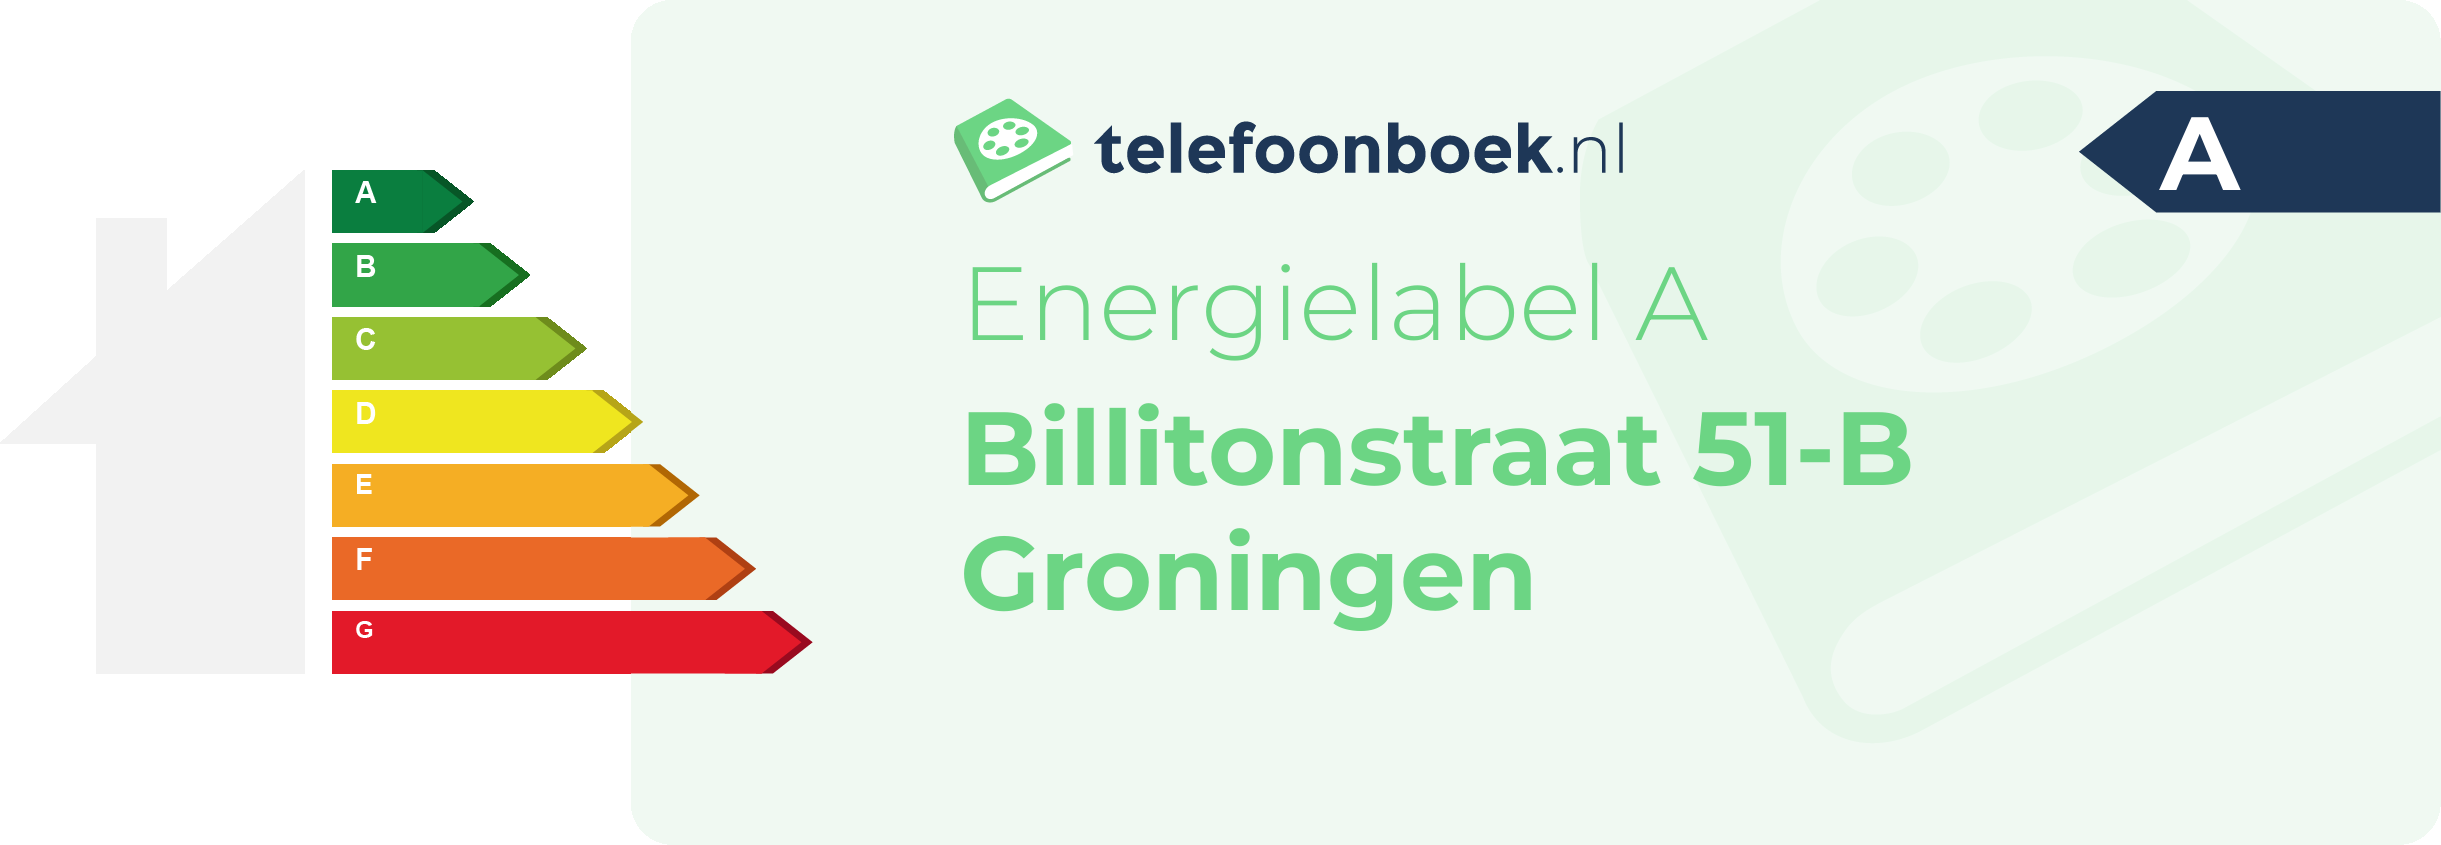 Energielabel Billitonstraat 51-B Groningen